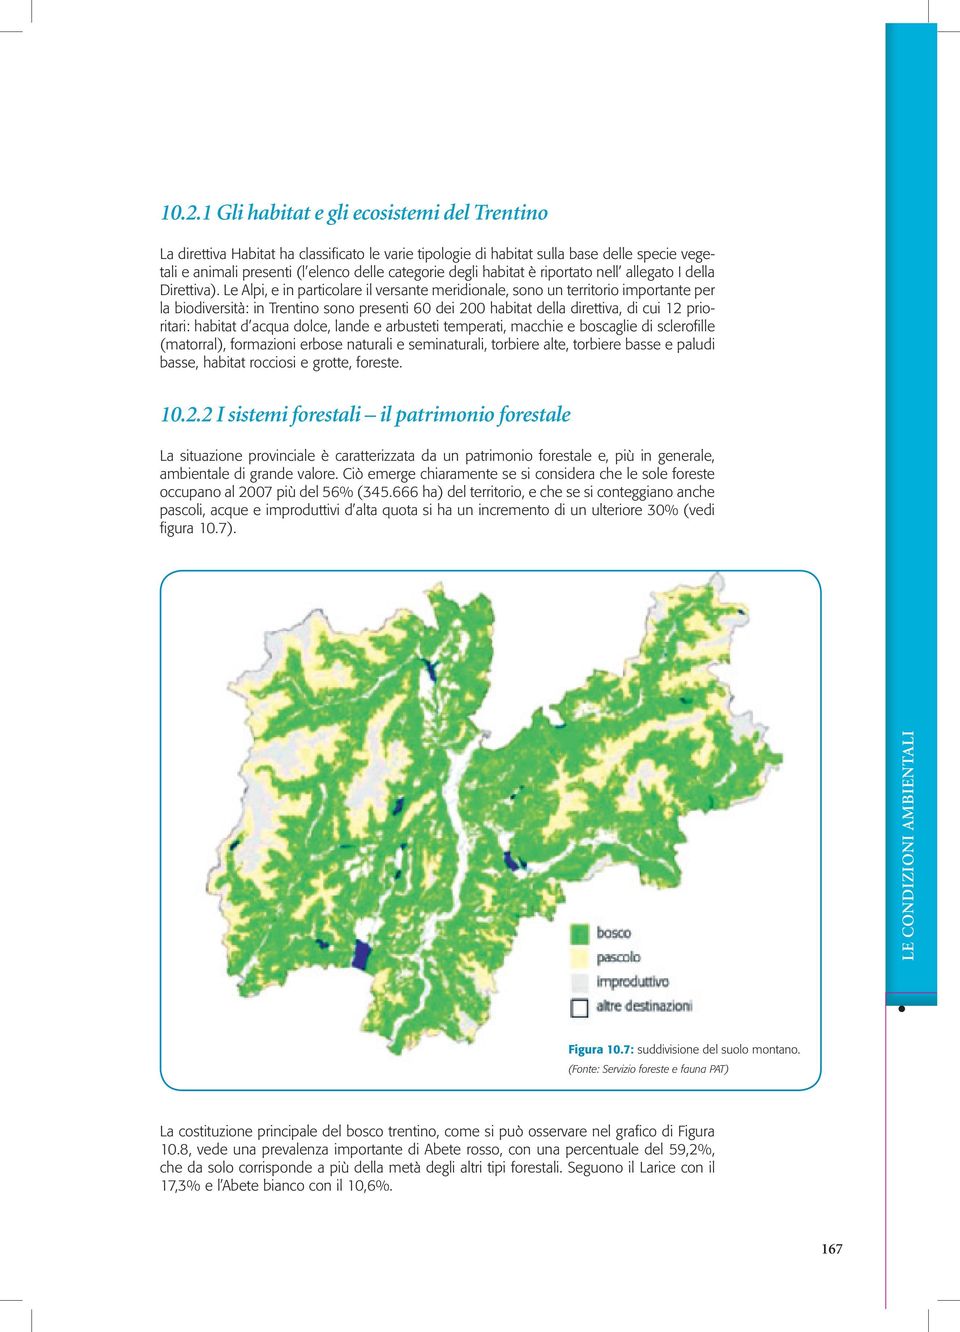 Le Alpi, e in particolare il versante meridionale, sono un territorio importante per la biodiversità: in Trentino sono presenti 60 dei 200 habitat della direttiva, di cui 12 prioritari: habitat d